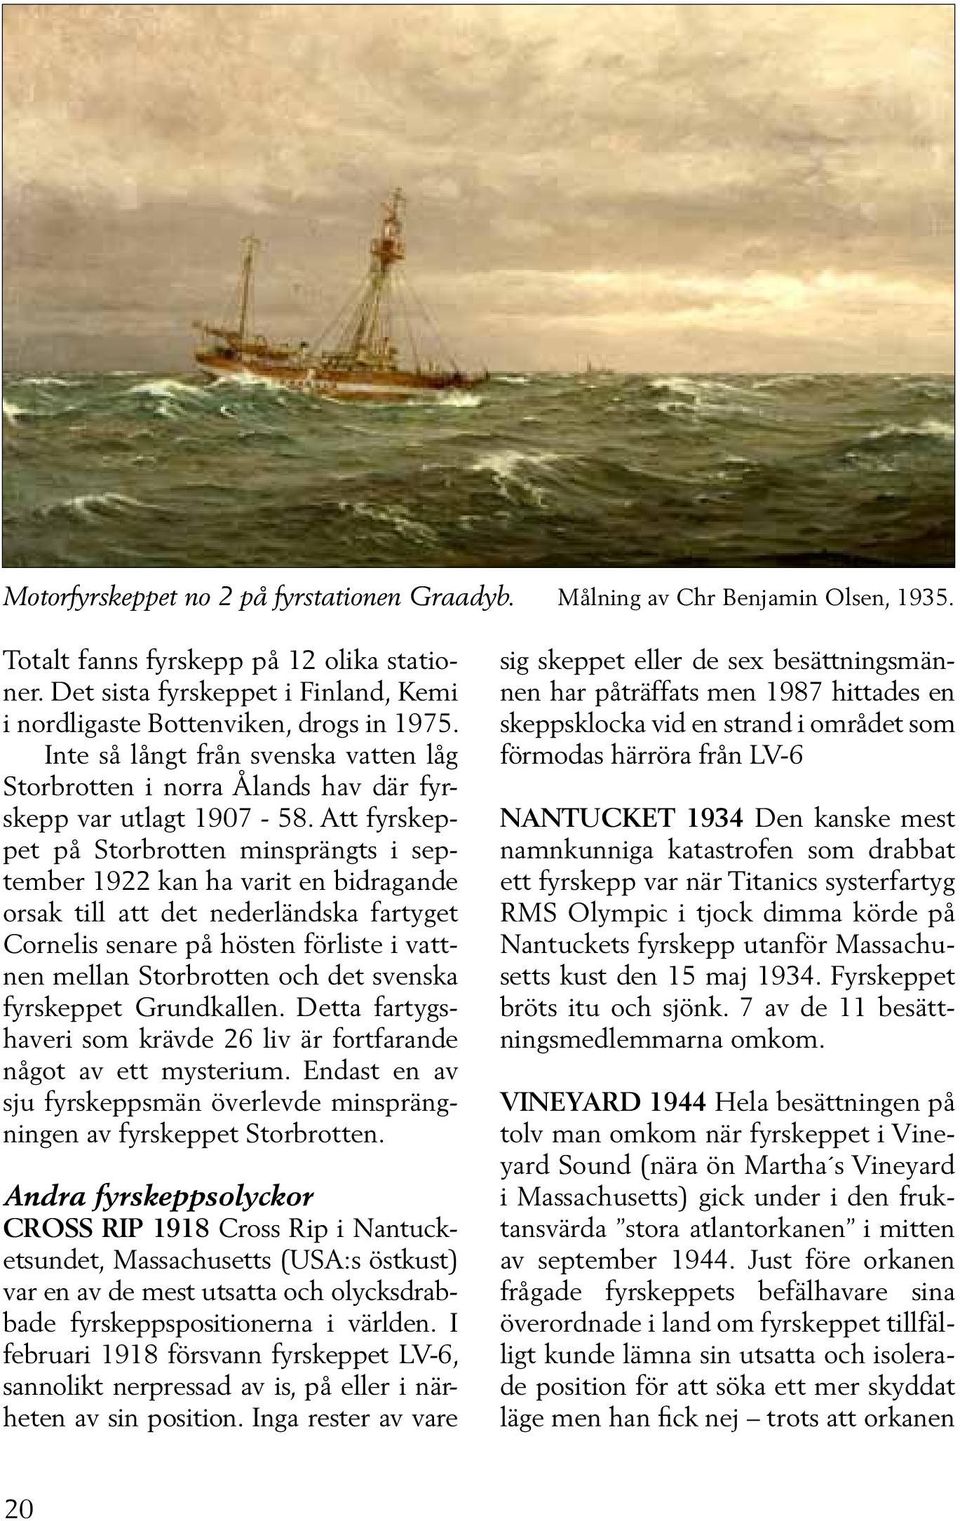 Att fyrskeppet på Storbrotten minsprängts i september 1922 kan ha varit en bidragande orsak till att det nederländska fartyget Cornelis senare på hösten förliste i vattnen mellan Storbrotten och det